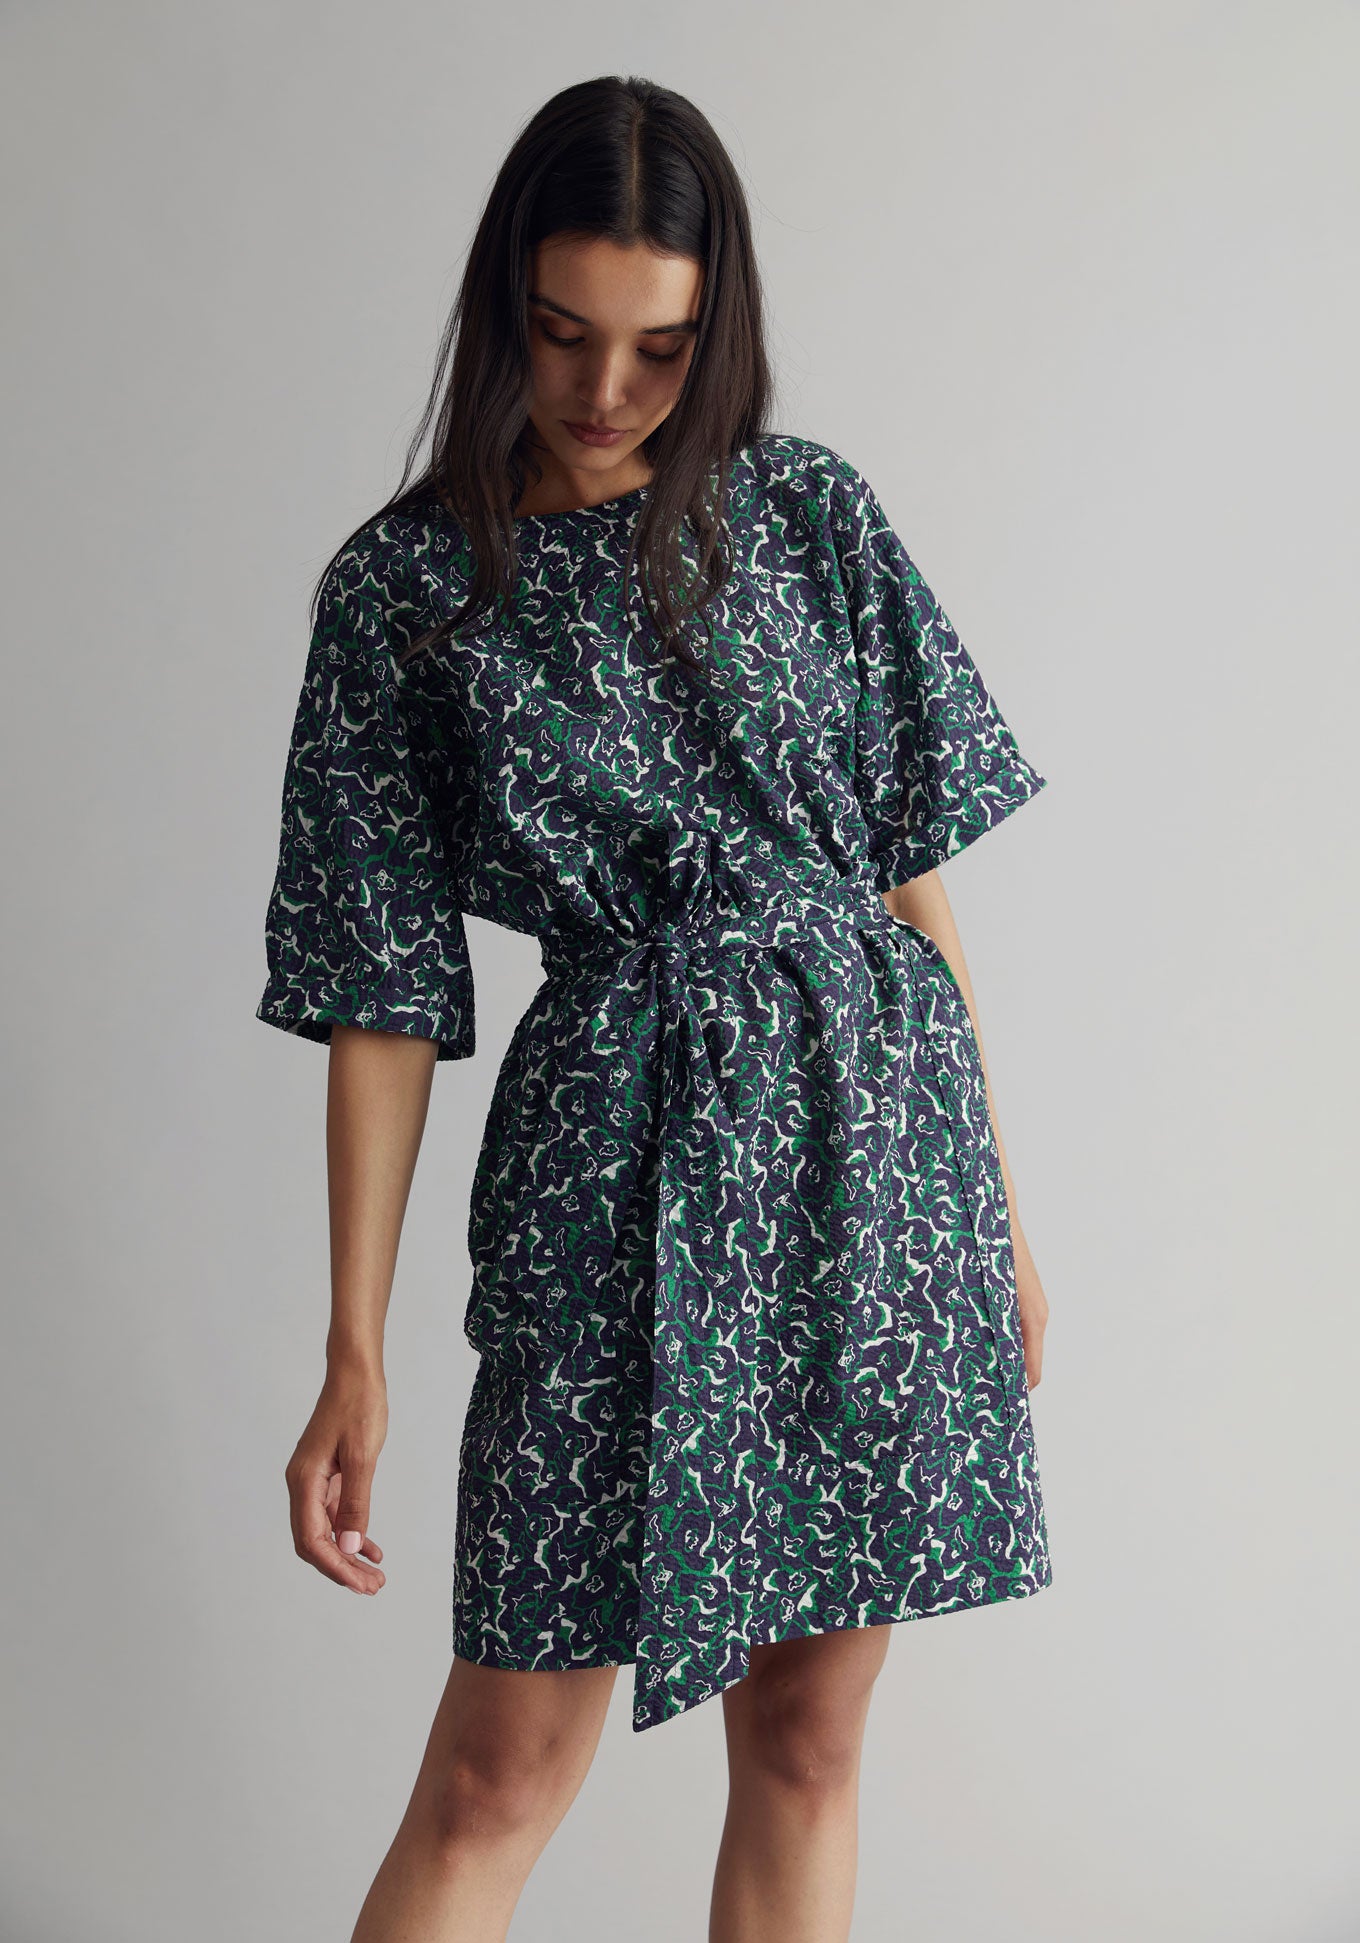 AKINA Dress - Organic Cotton Navy Print, SIZE 2 / UK 10 / EUR 38